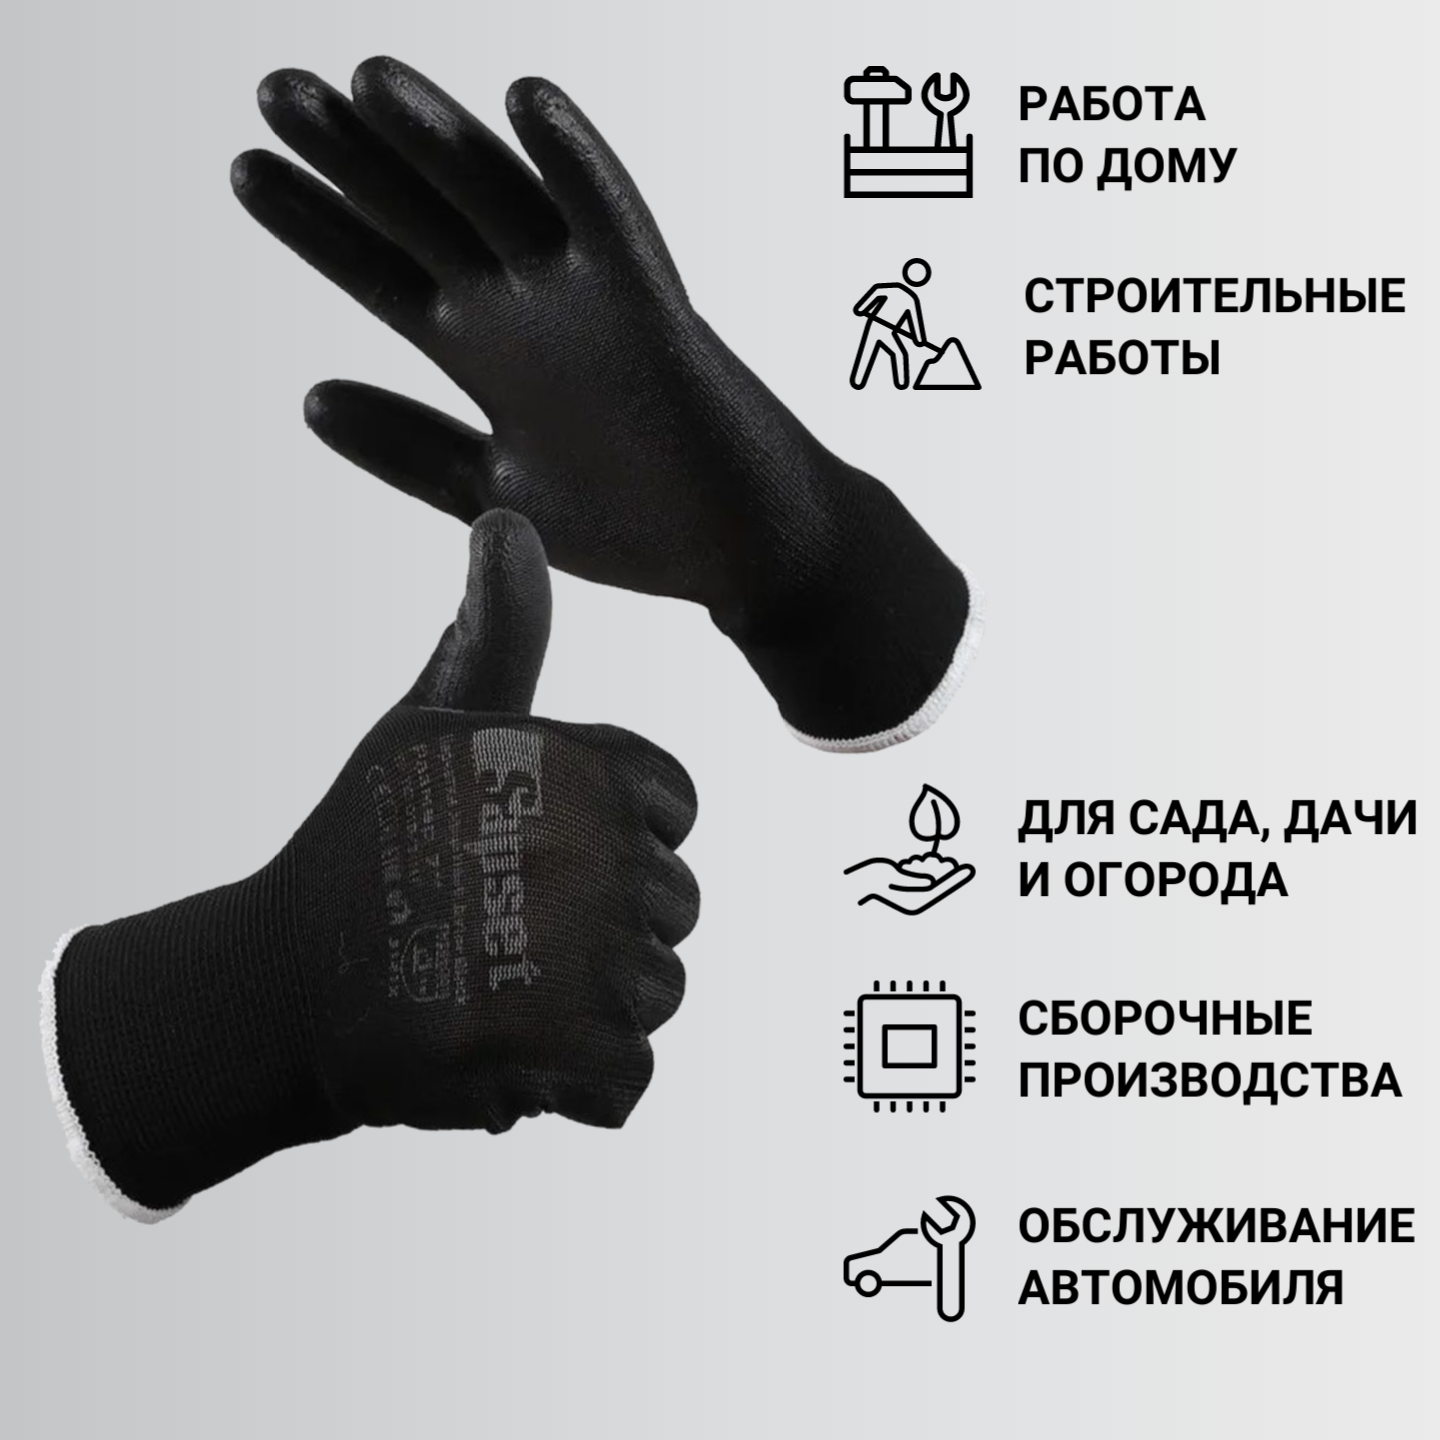 Перчатки рабочие с покрытием из полиуретана Sapset Avior Black размер XXL/11 - 10 пар